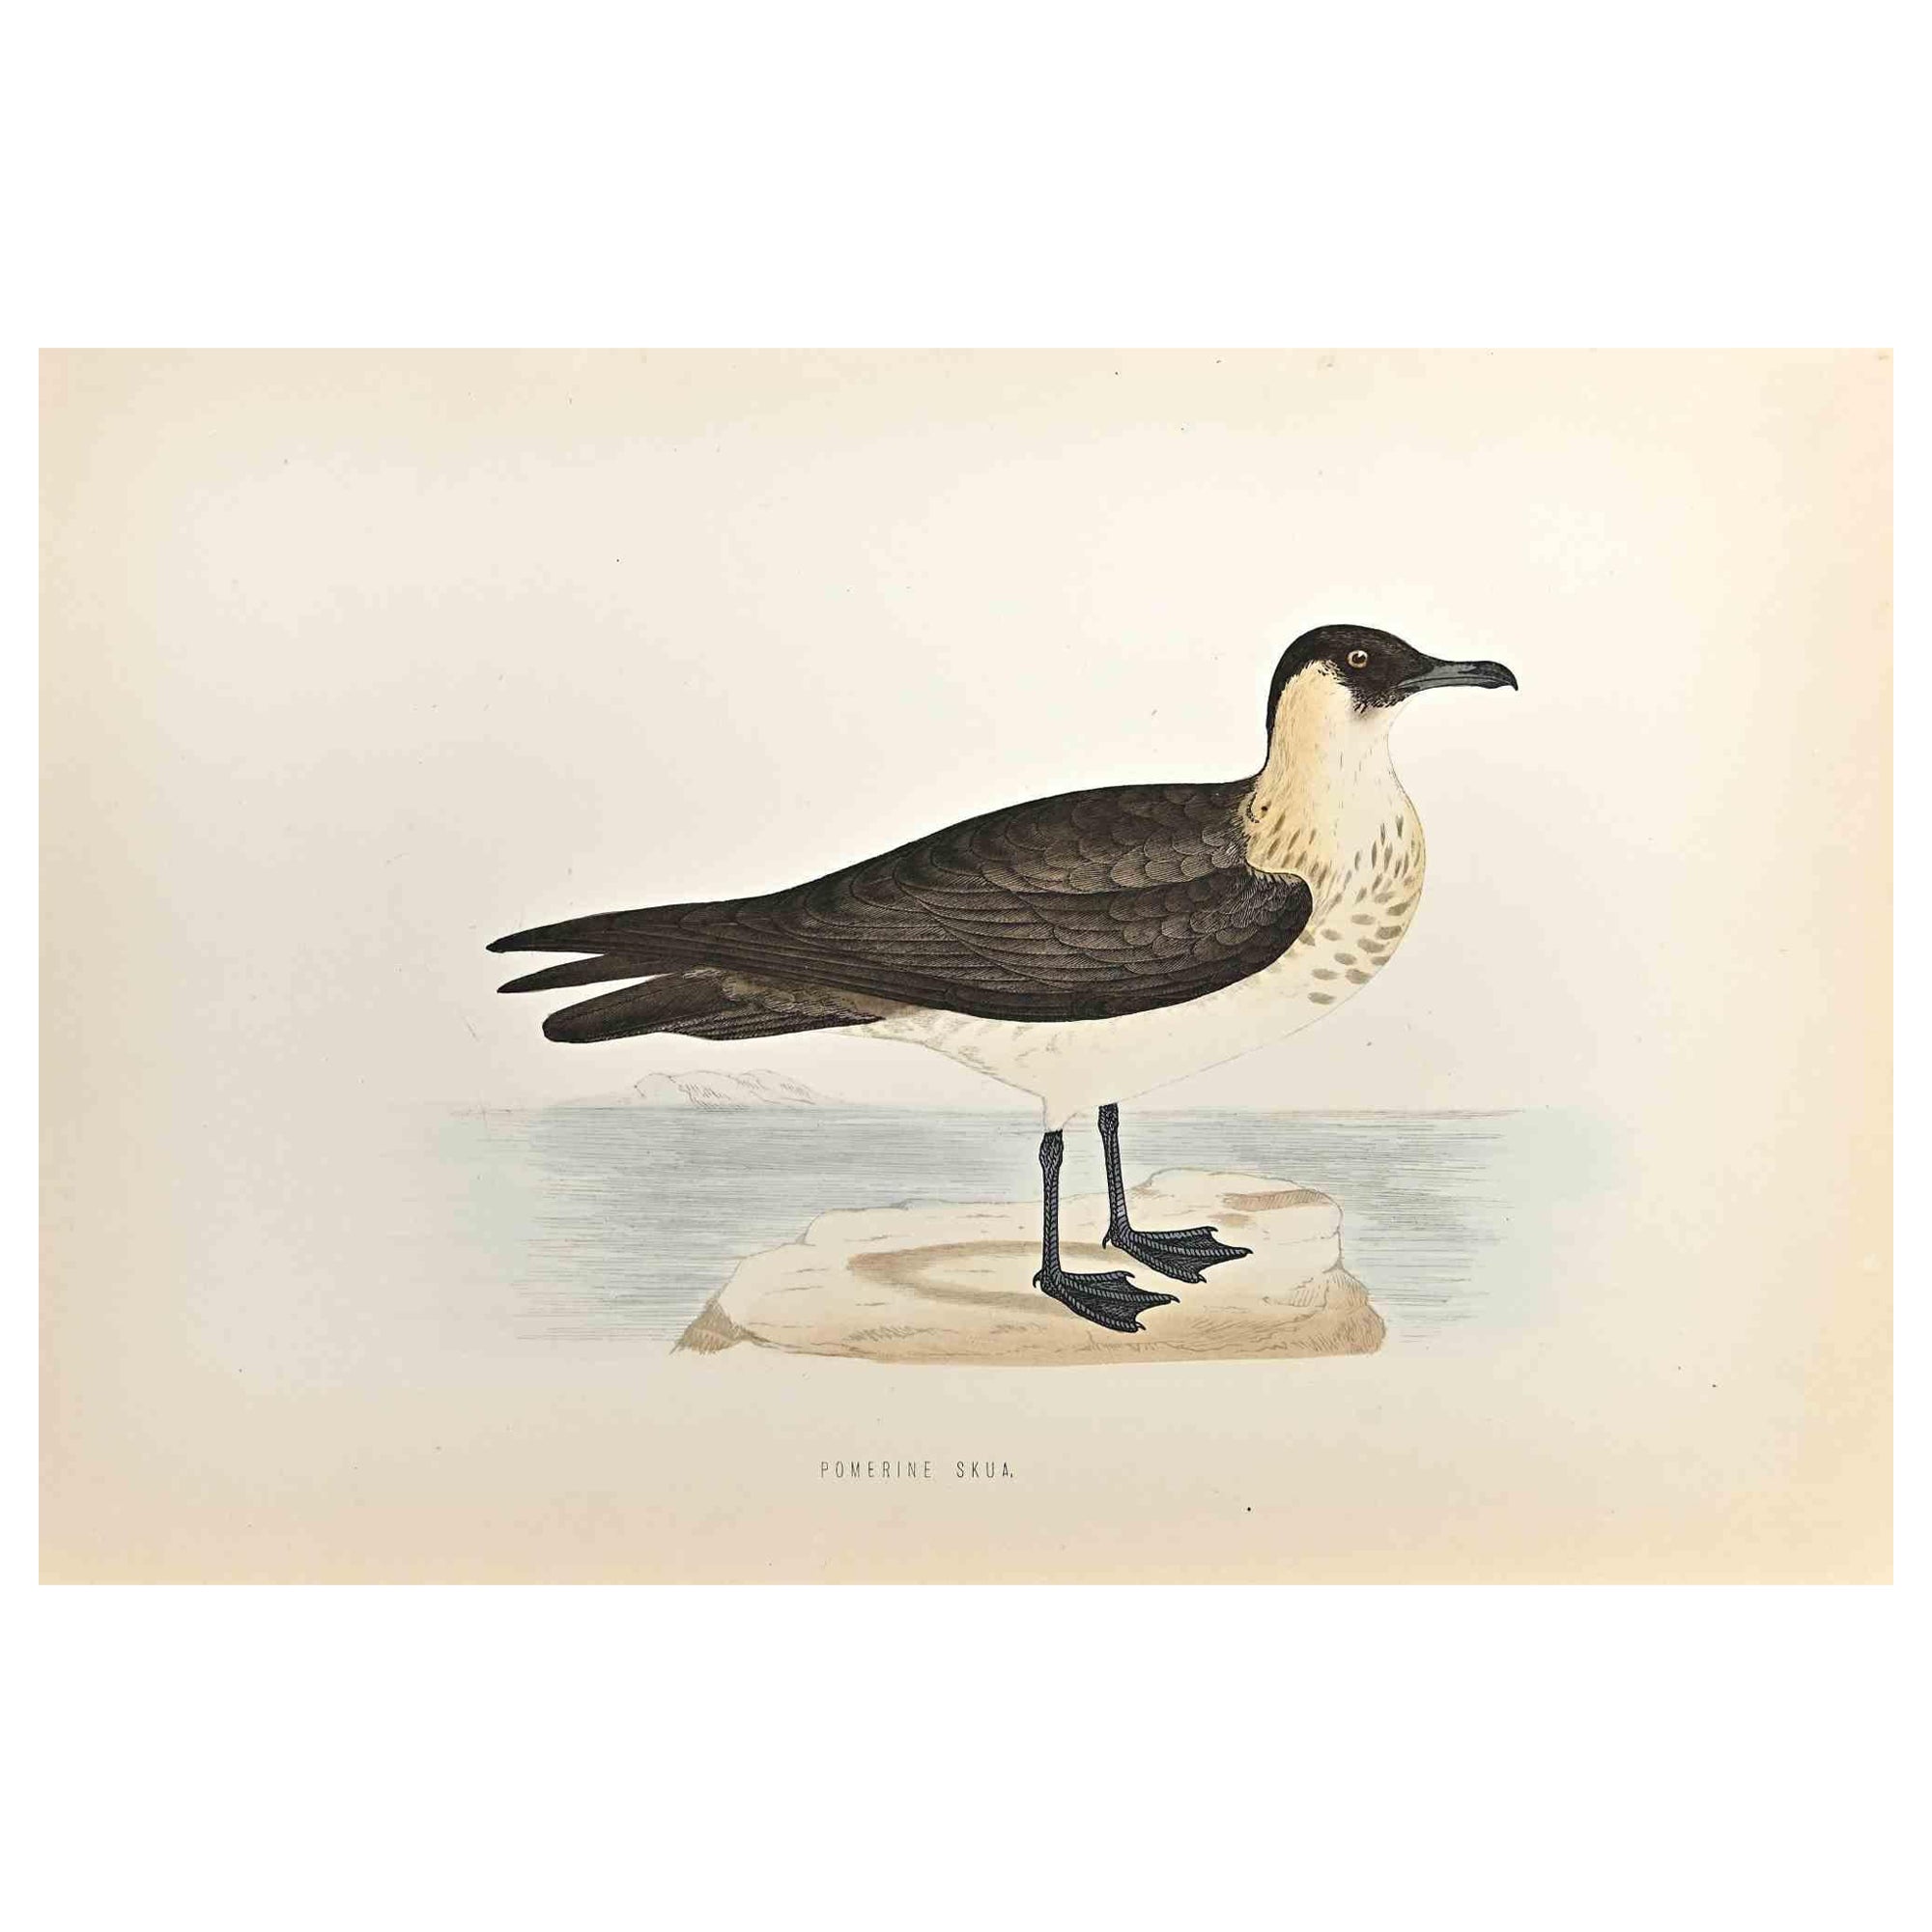 Le labbe pomérin est  une œuvre d'art moderne réalisée en 1870 par l'artiste britannique Alexander Francis Lydon (1836-1917) . 

Gravure sur bois, colorée à la main, publiée par London, Bell & Sons, 1870.  Nom de l'oiseau imprimé dans la plaque.